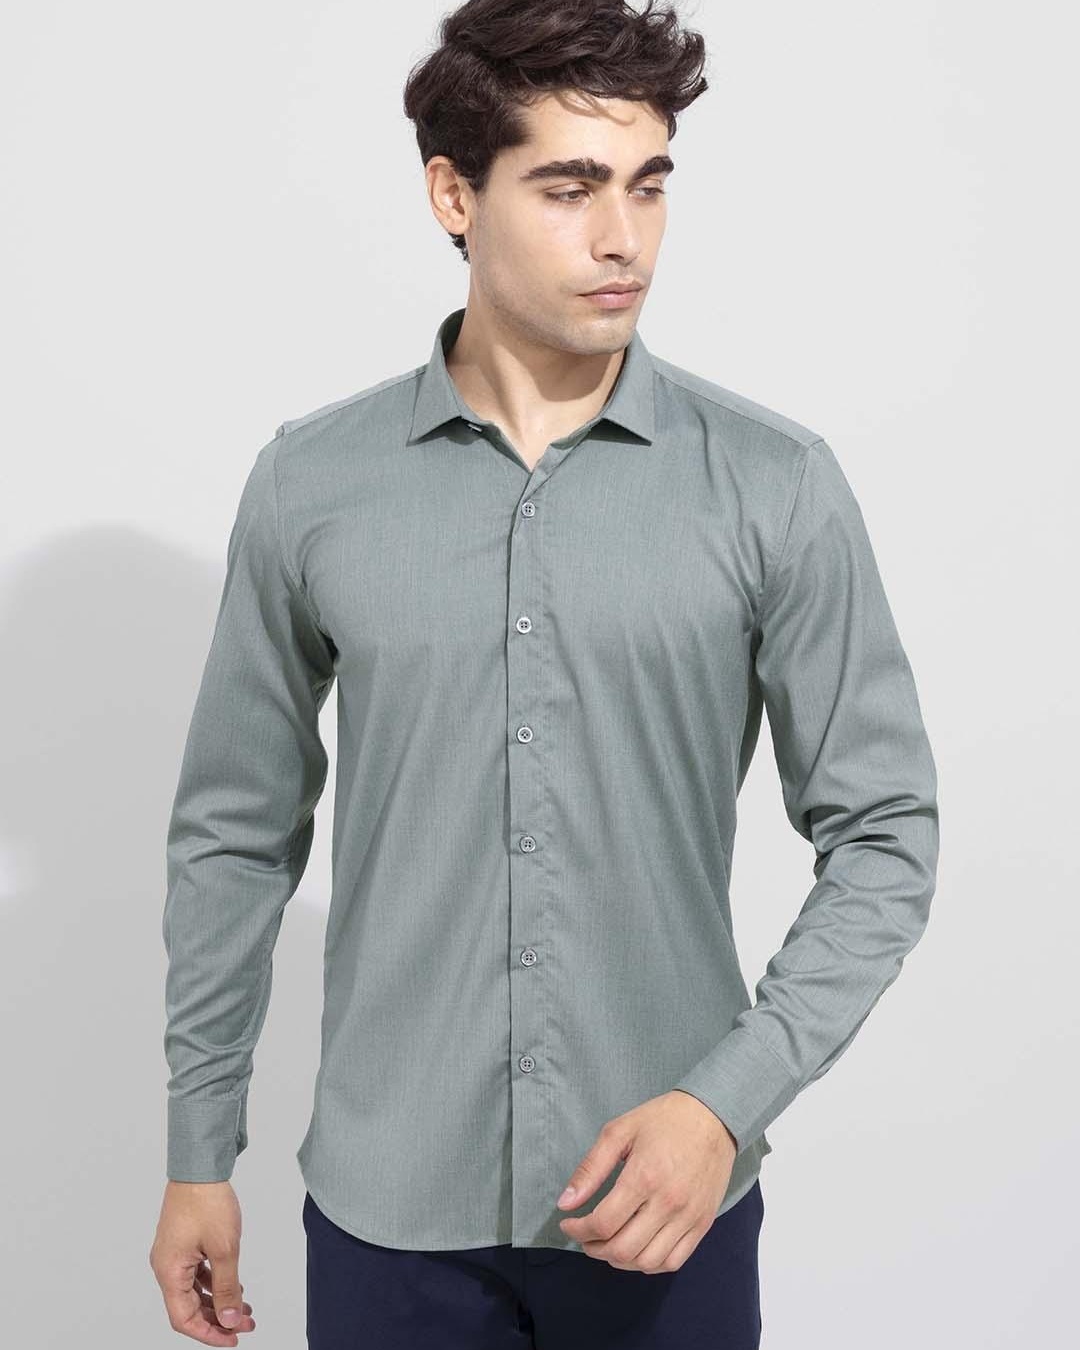 Buy Men's Green Slim Fit Shirt Online at Bewakoof